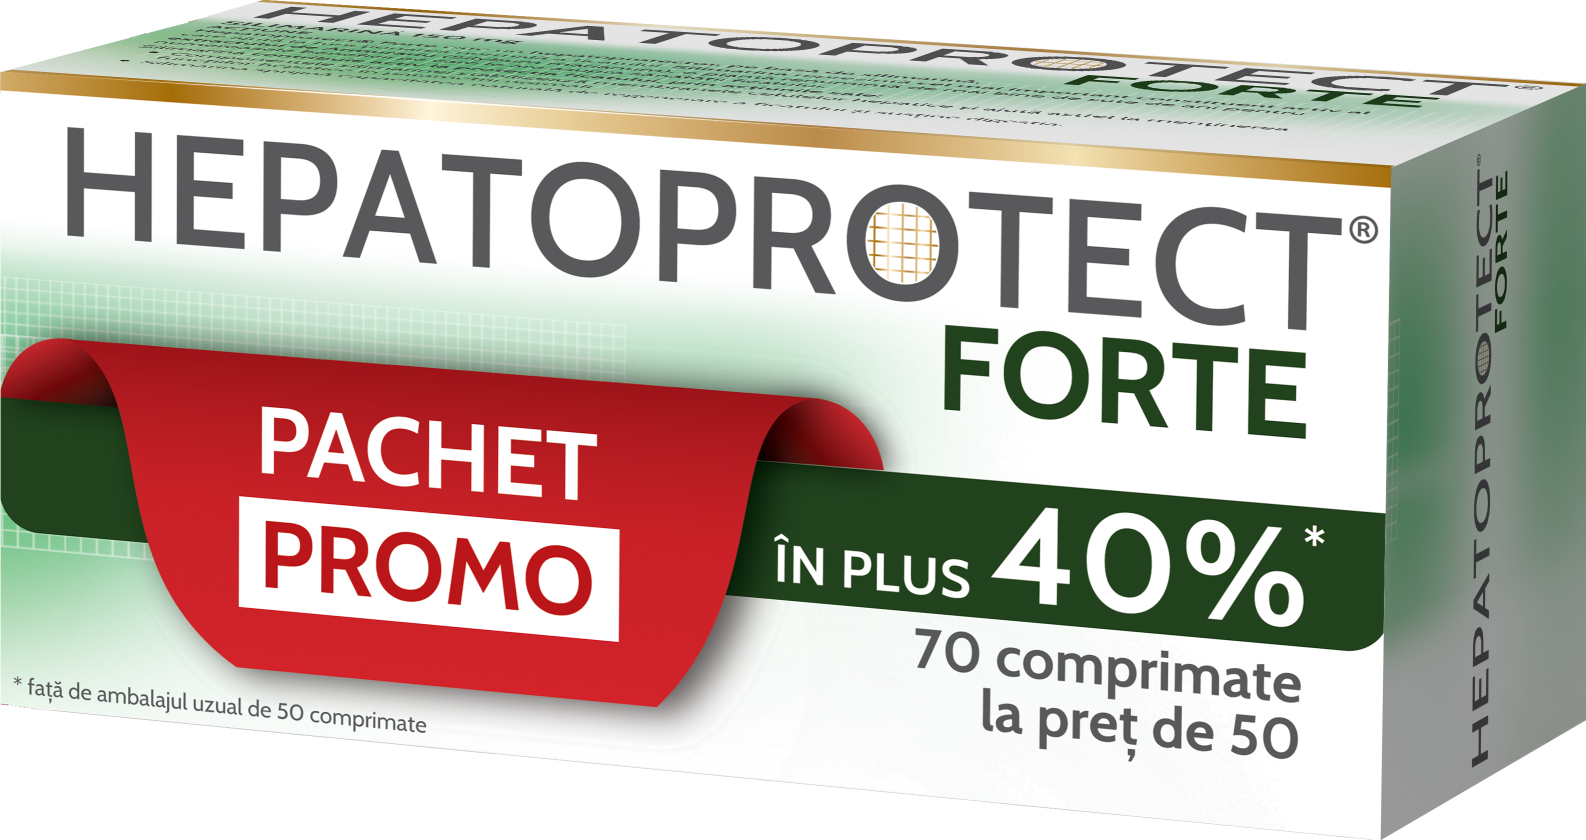 Suplimente alimentare - Hepatoprotect Forte Pachet Promo, 70 comprimate la pret de 50 comprimate, Biofarm , nordpharm.ro